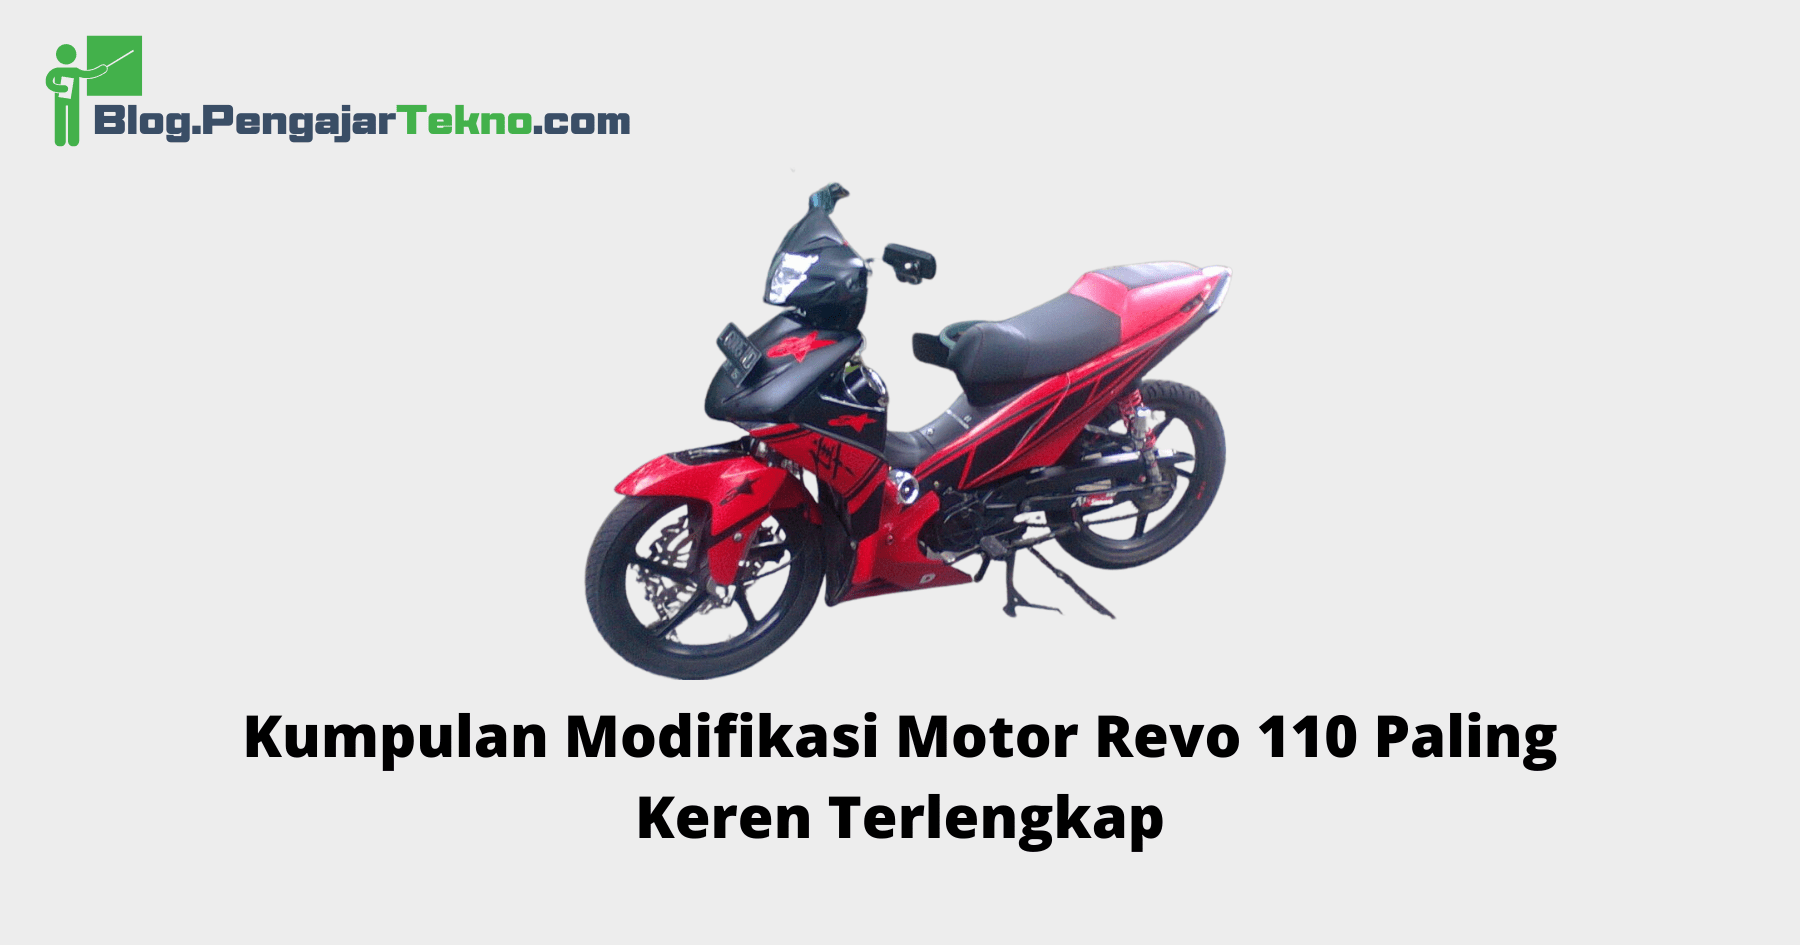 Modifikasi Motor Revo 110 Paling Keren. Kumpulan Modifikasi Motor Revo 110 Paling Keren Terlengkap